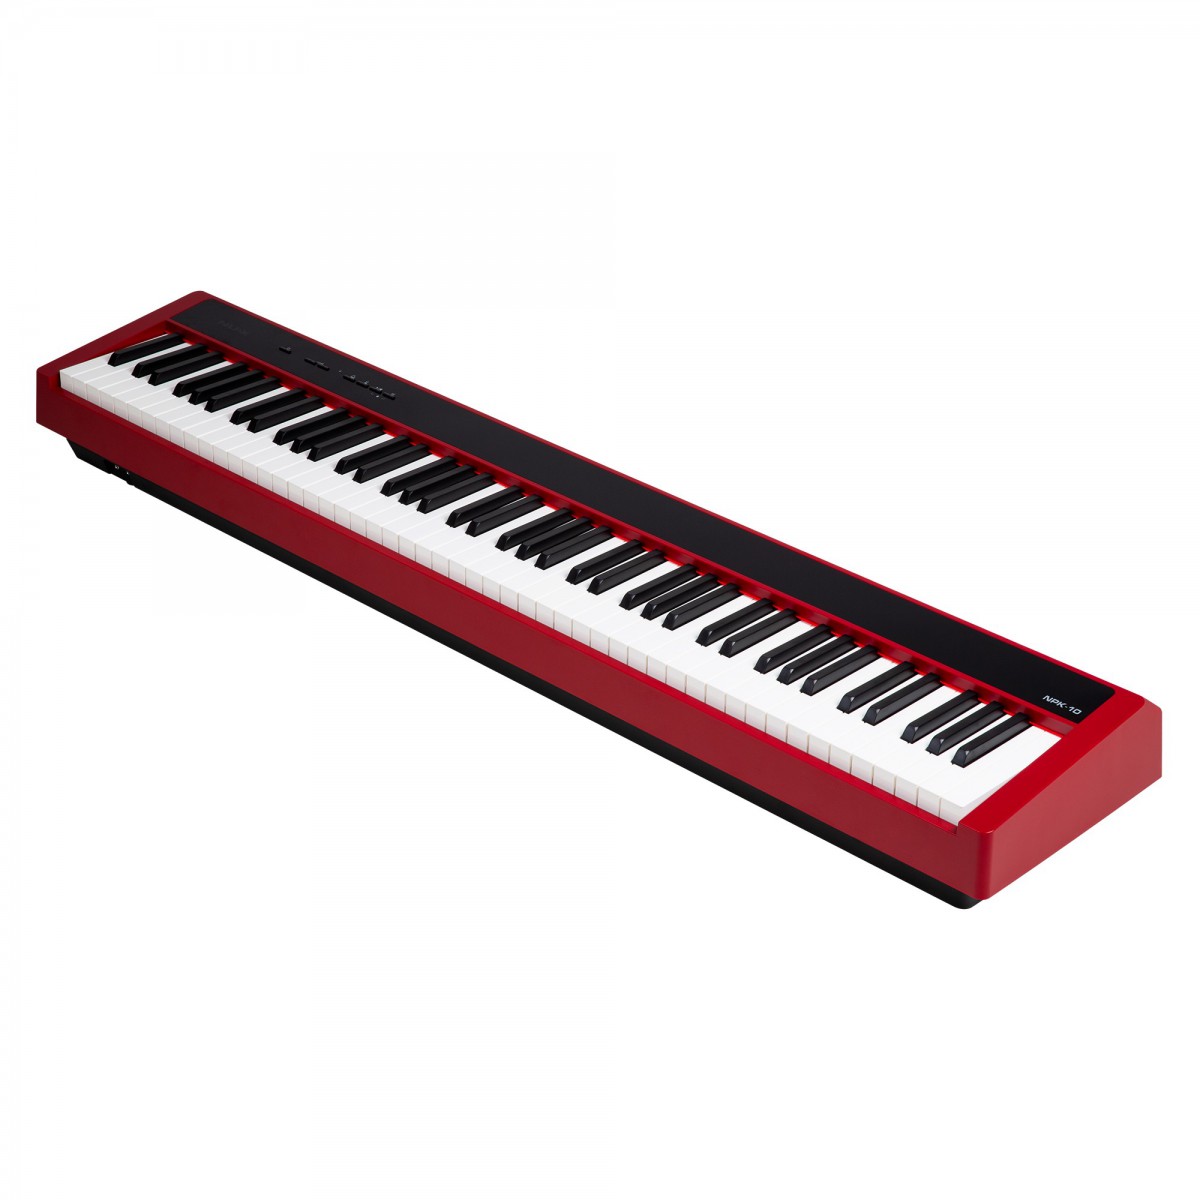 Nux NPK-10 Taşınabilir Kırmızı Dijital Piyano